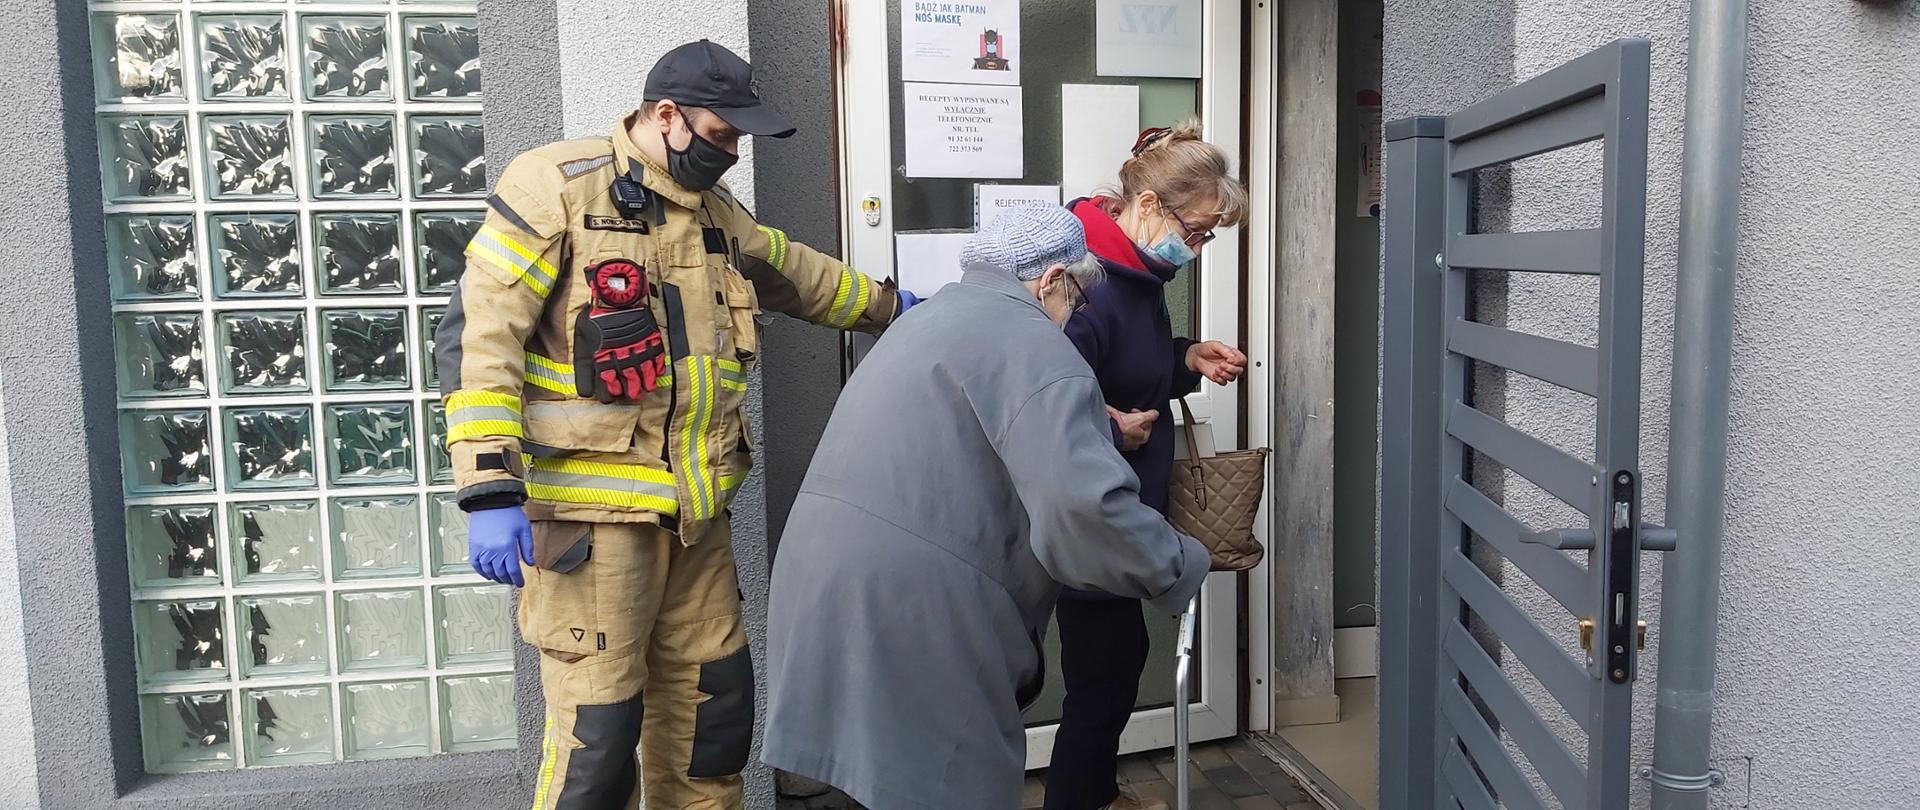 zdjęcie przedstawia strażaka który pomaga wraz z inną osobą starszej kobiecie wejść do punktu szczepień